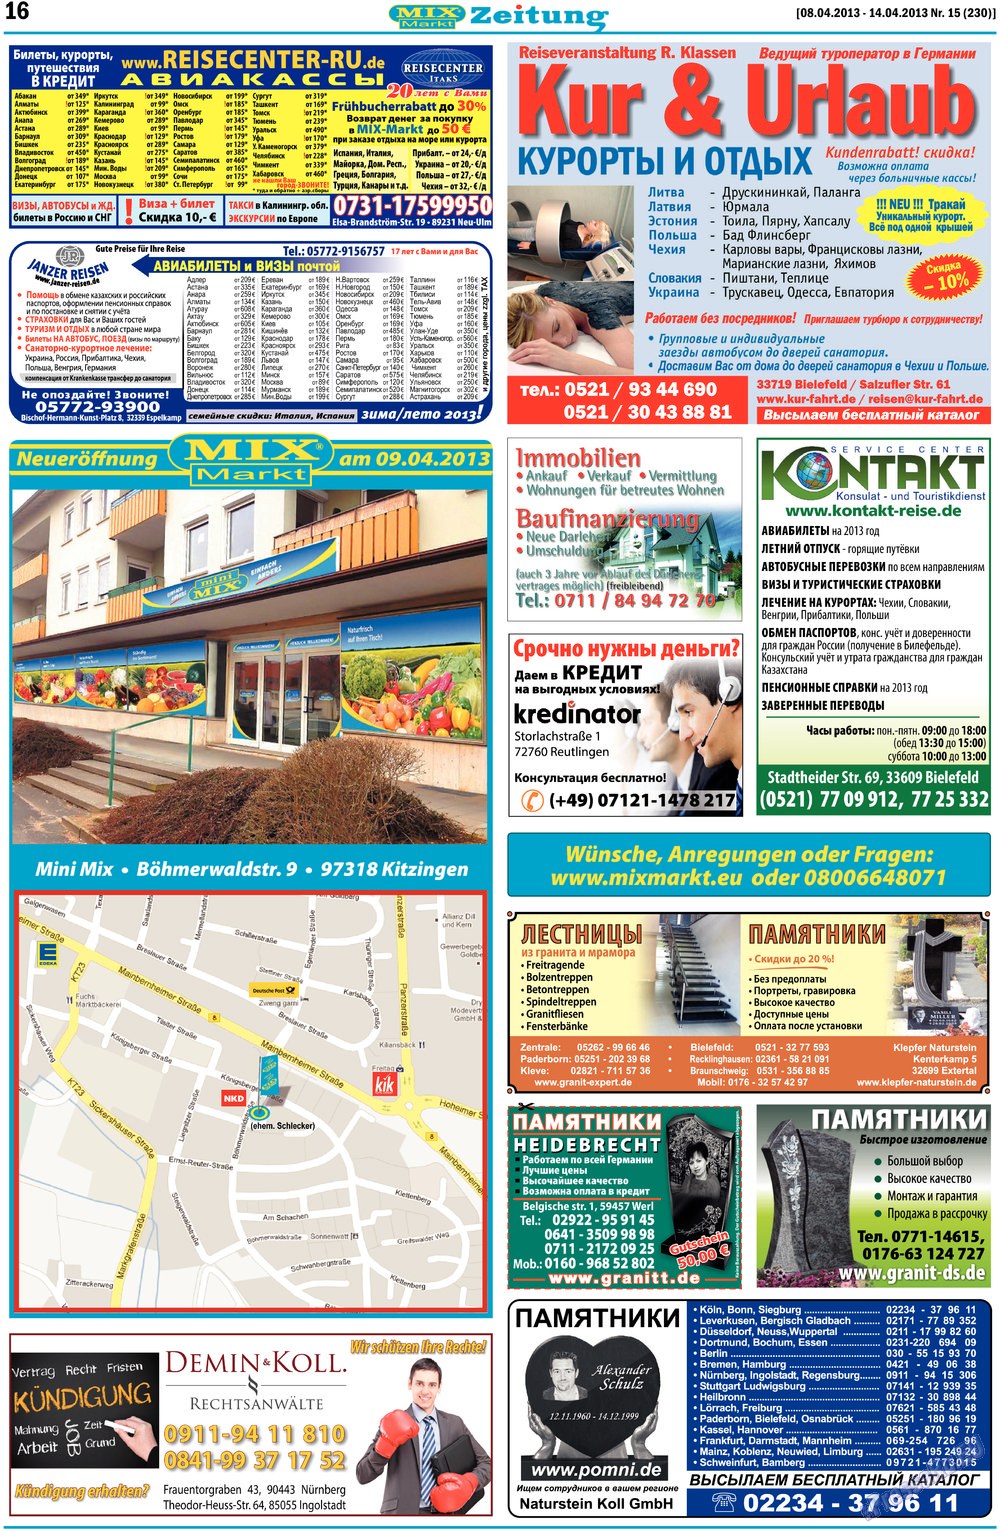 MIX-Markt Zeitung (газета). 2013 год, номер 15, стр. 16